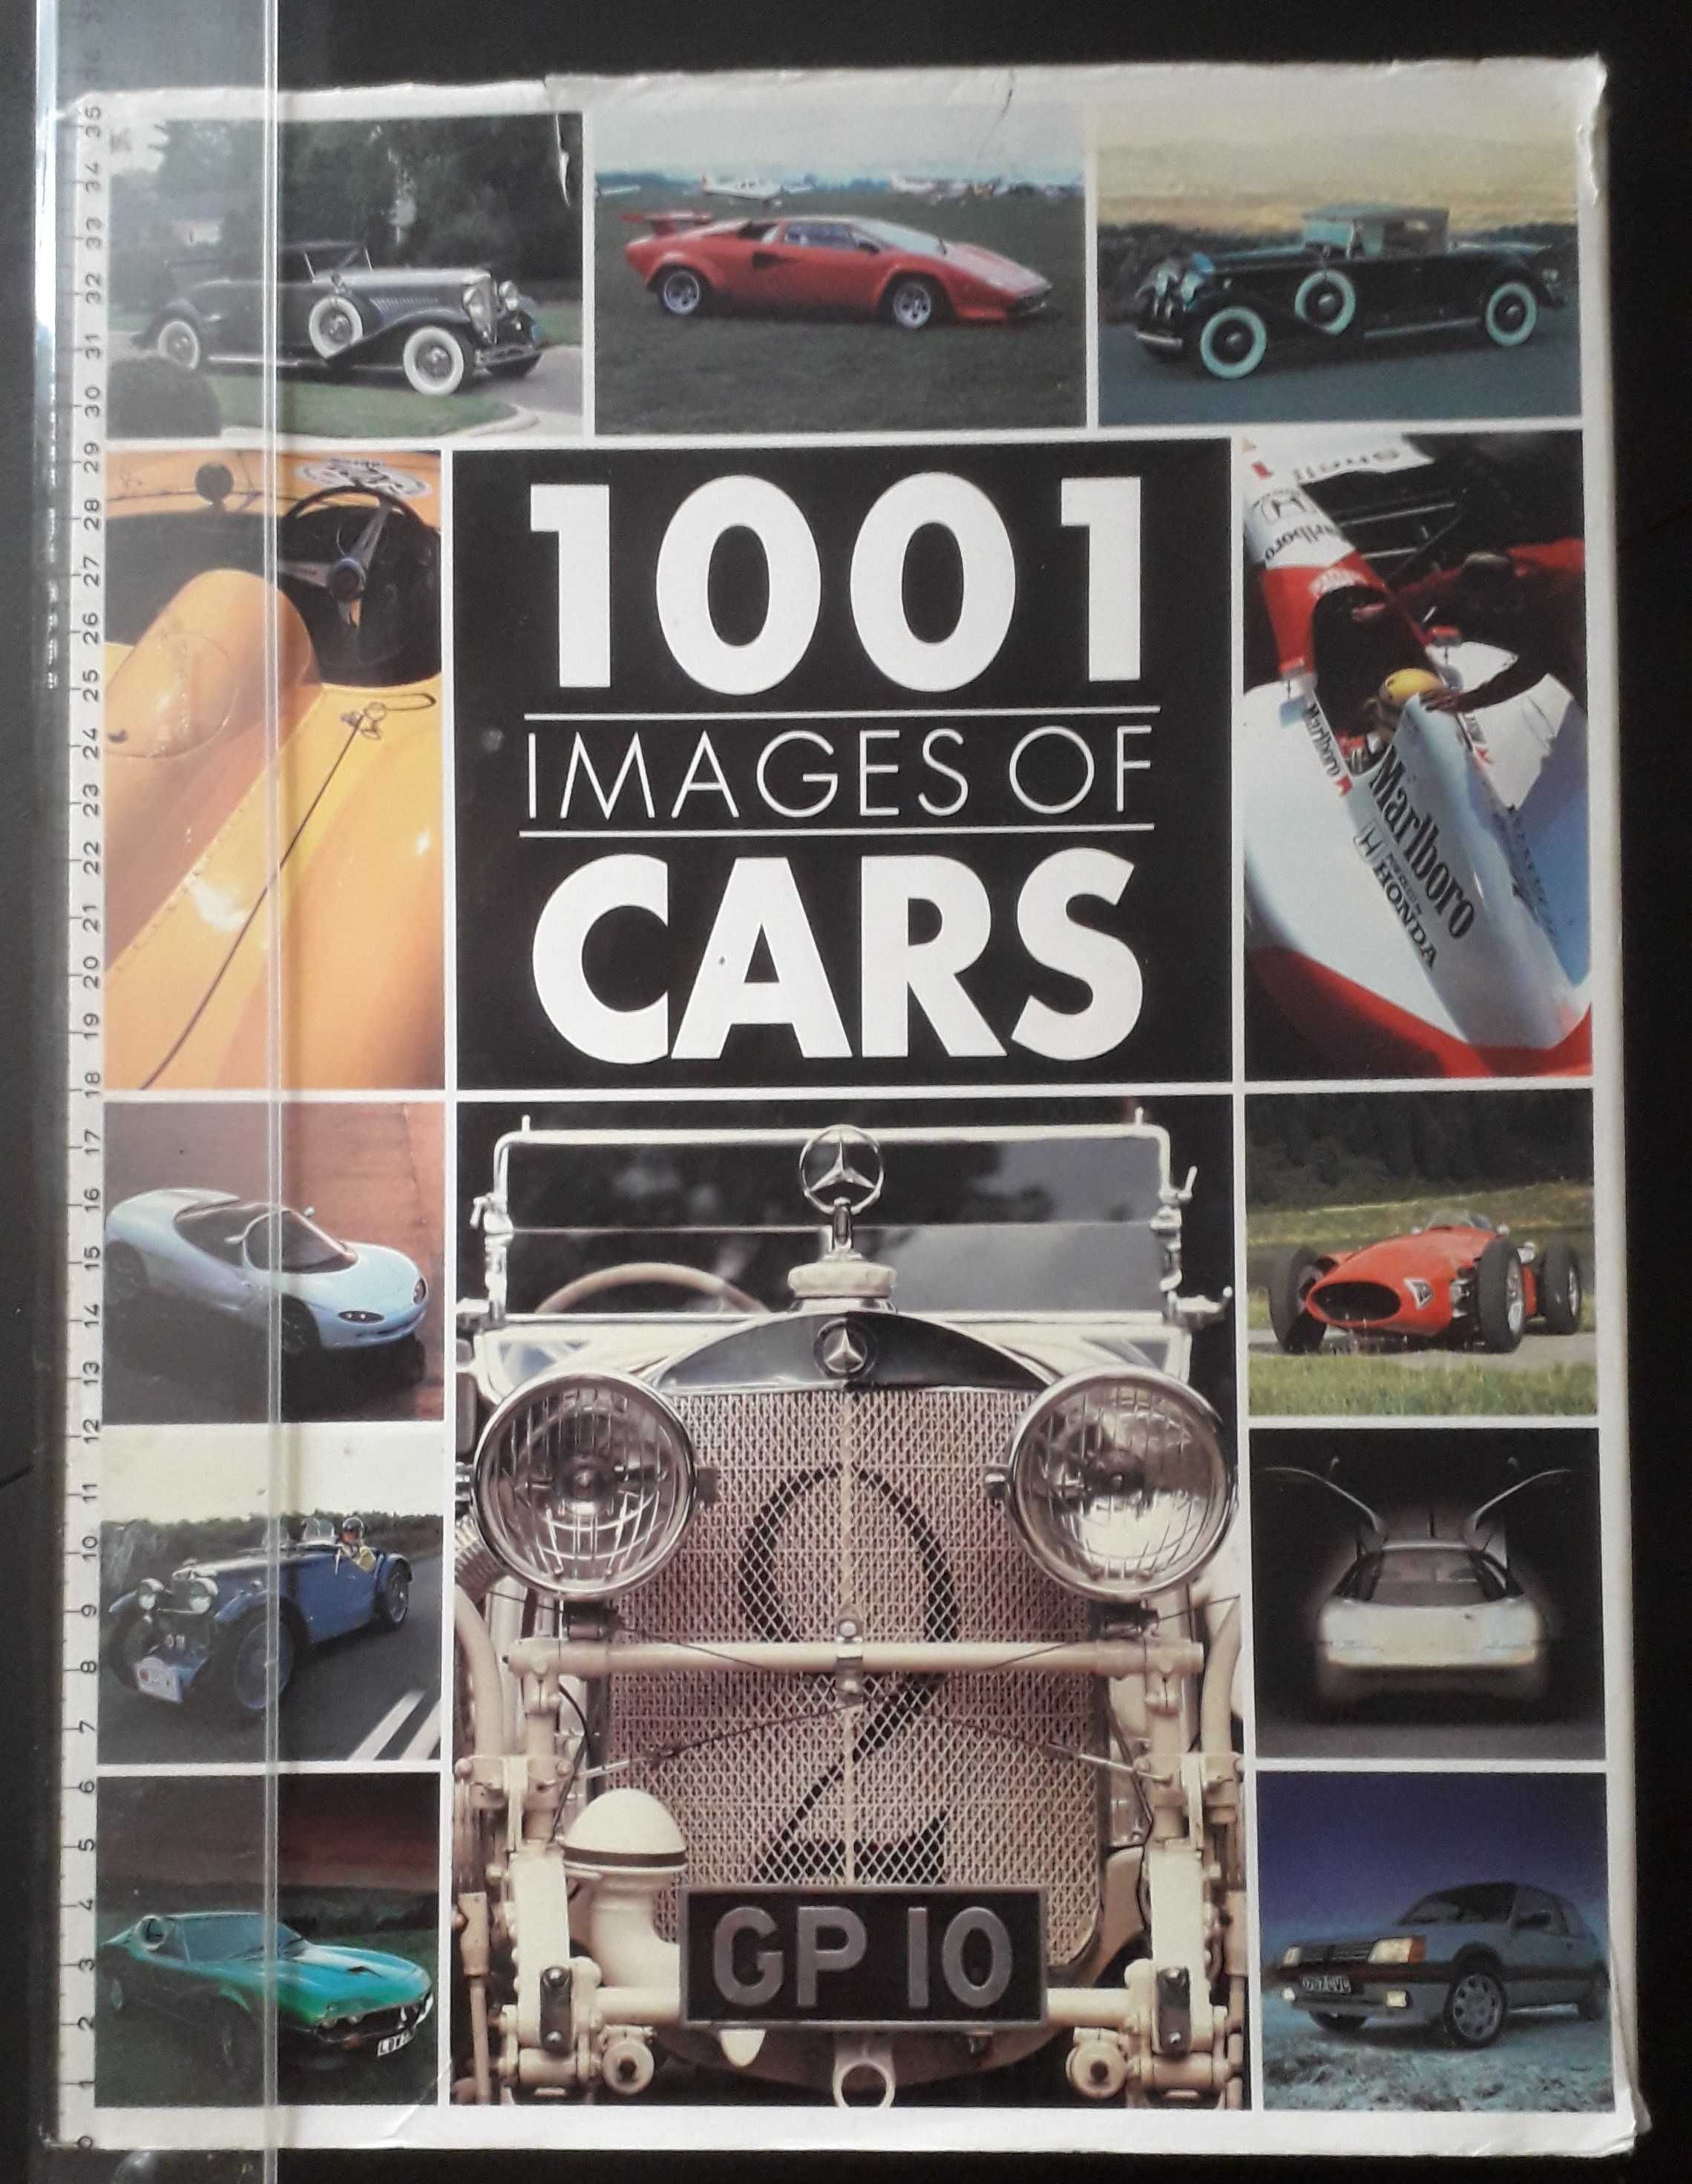 Automóveis - Livros grandes muitas imagens, em inglês sobre automóveis